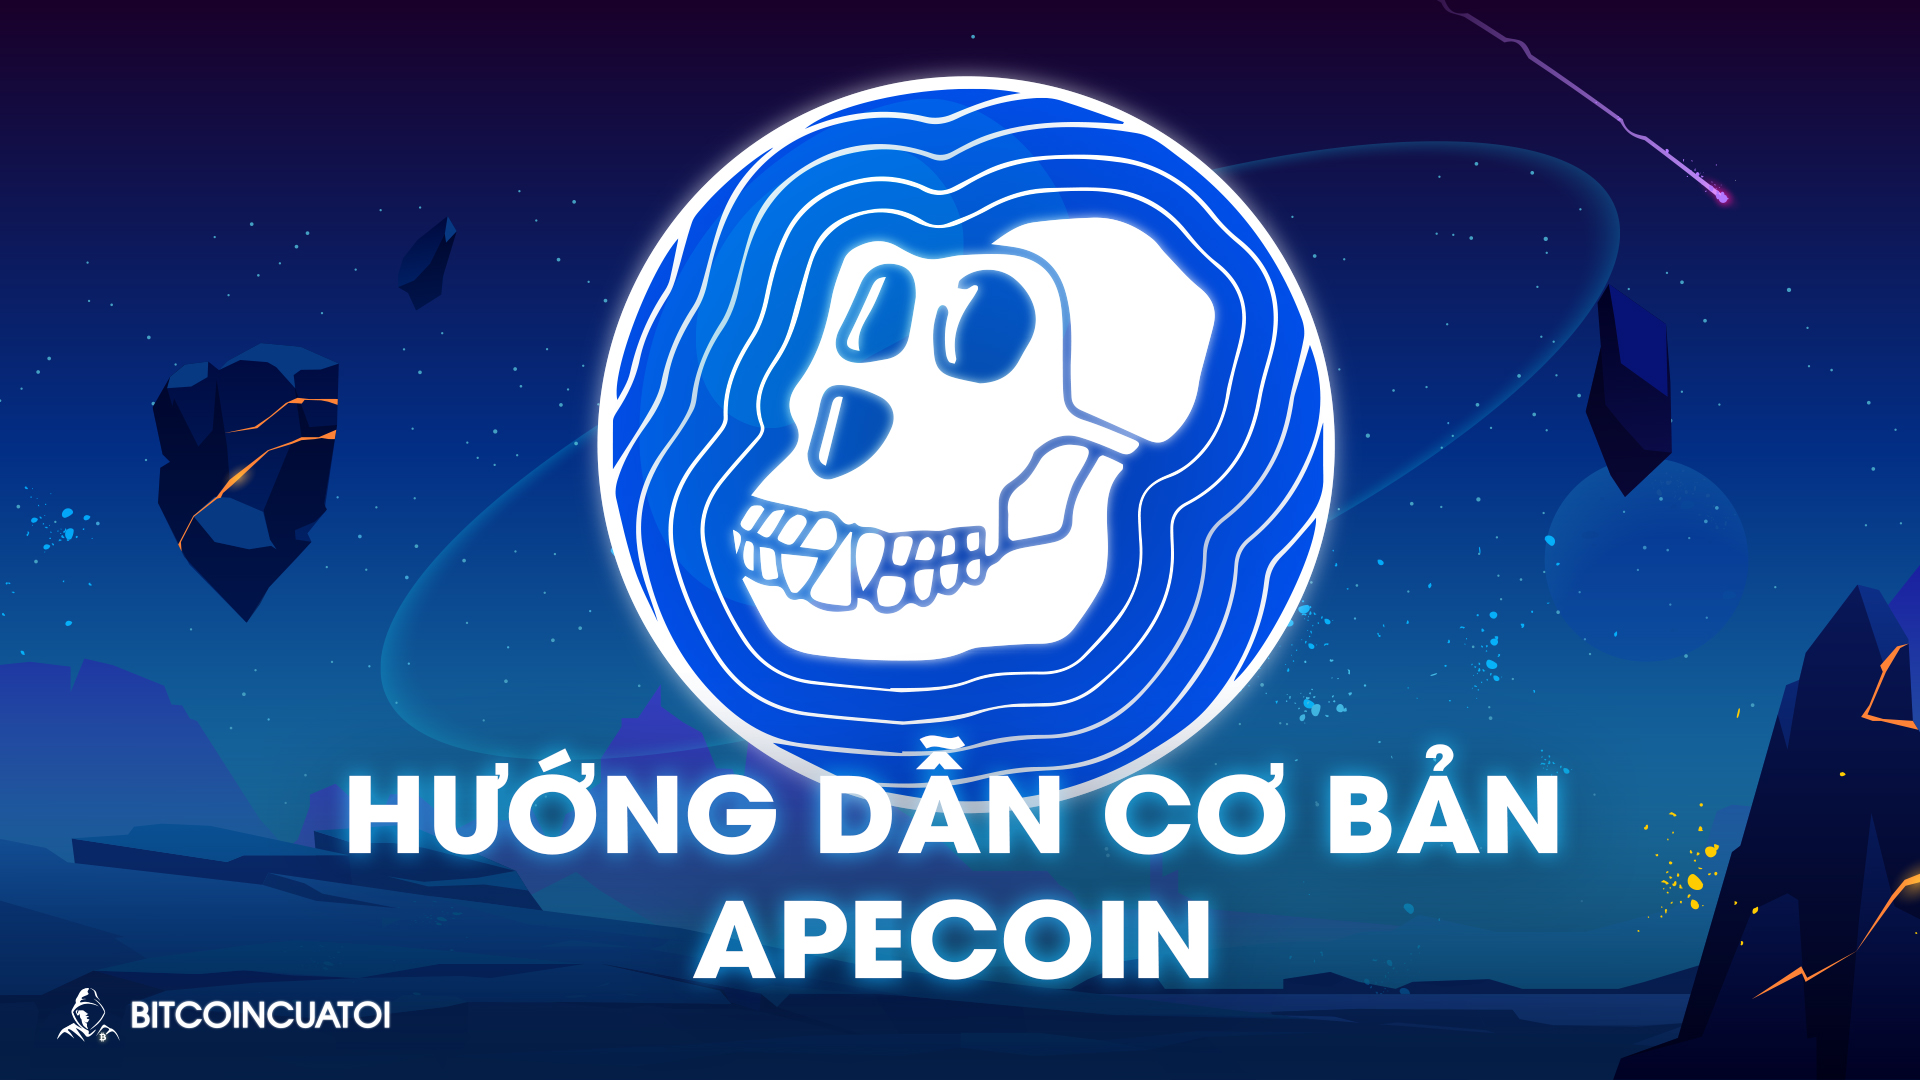 Hướng dẫn cơ bản về ApeCoin